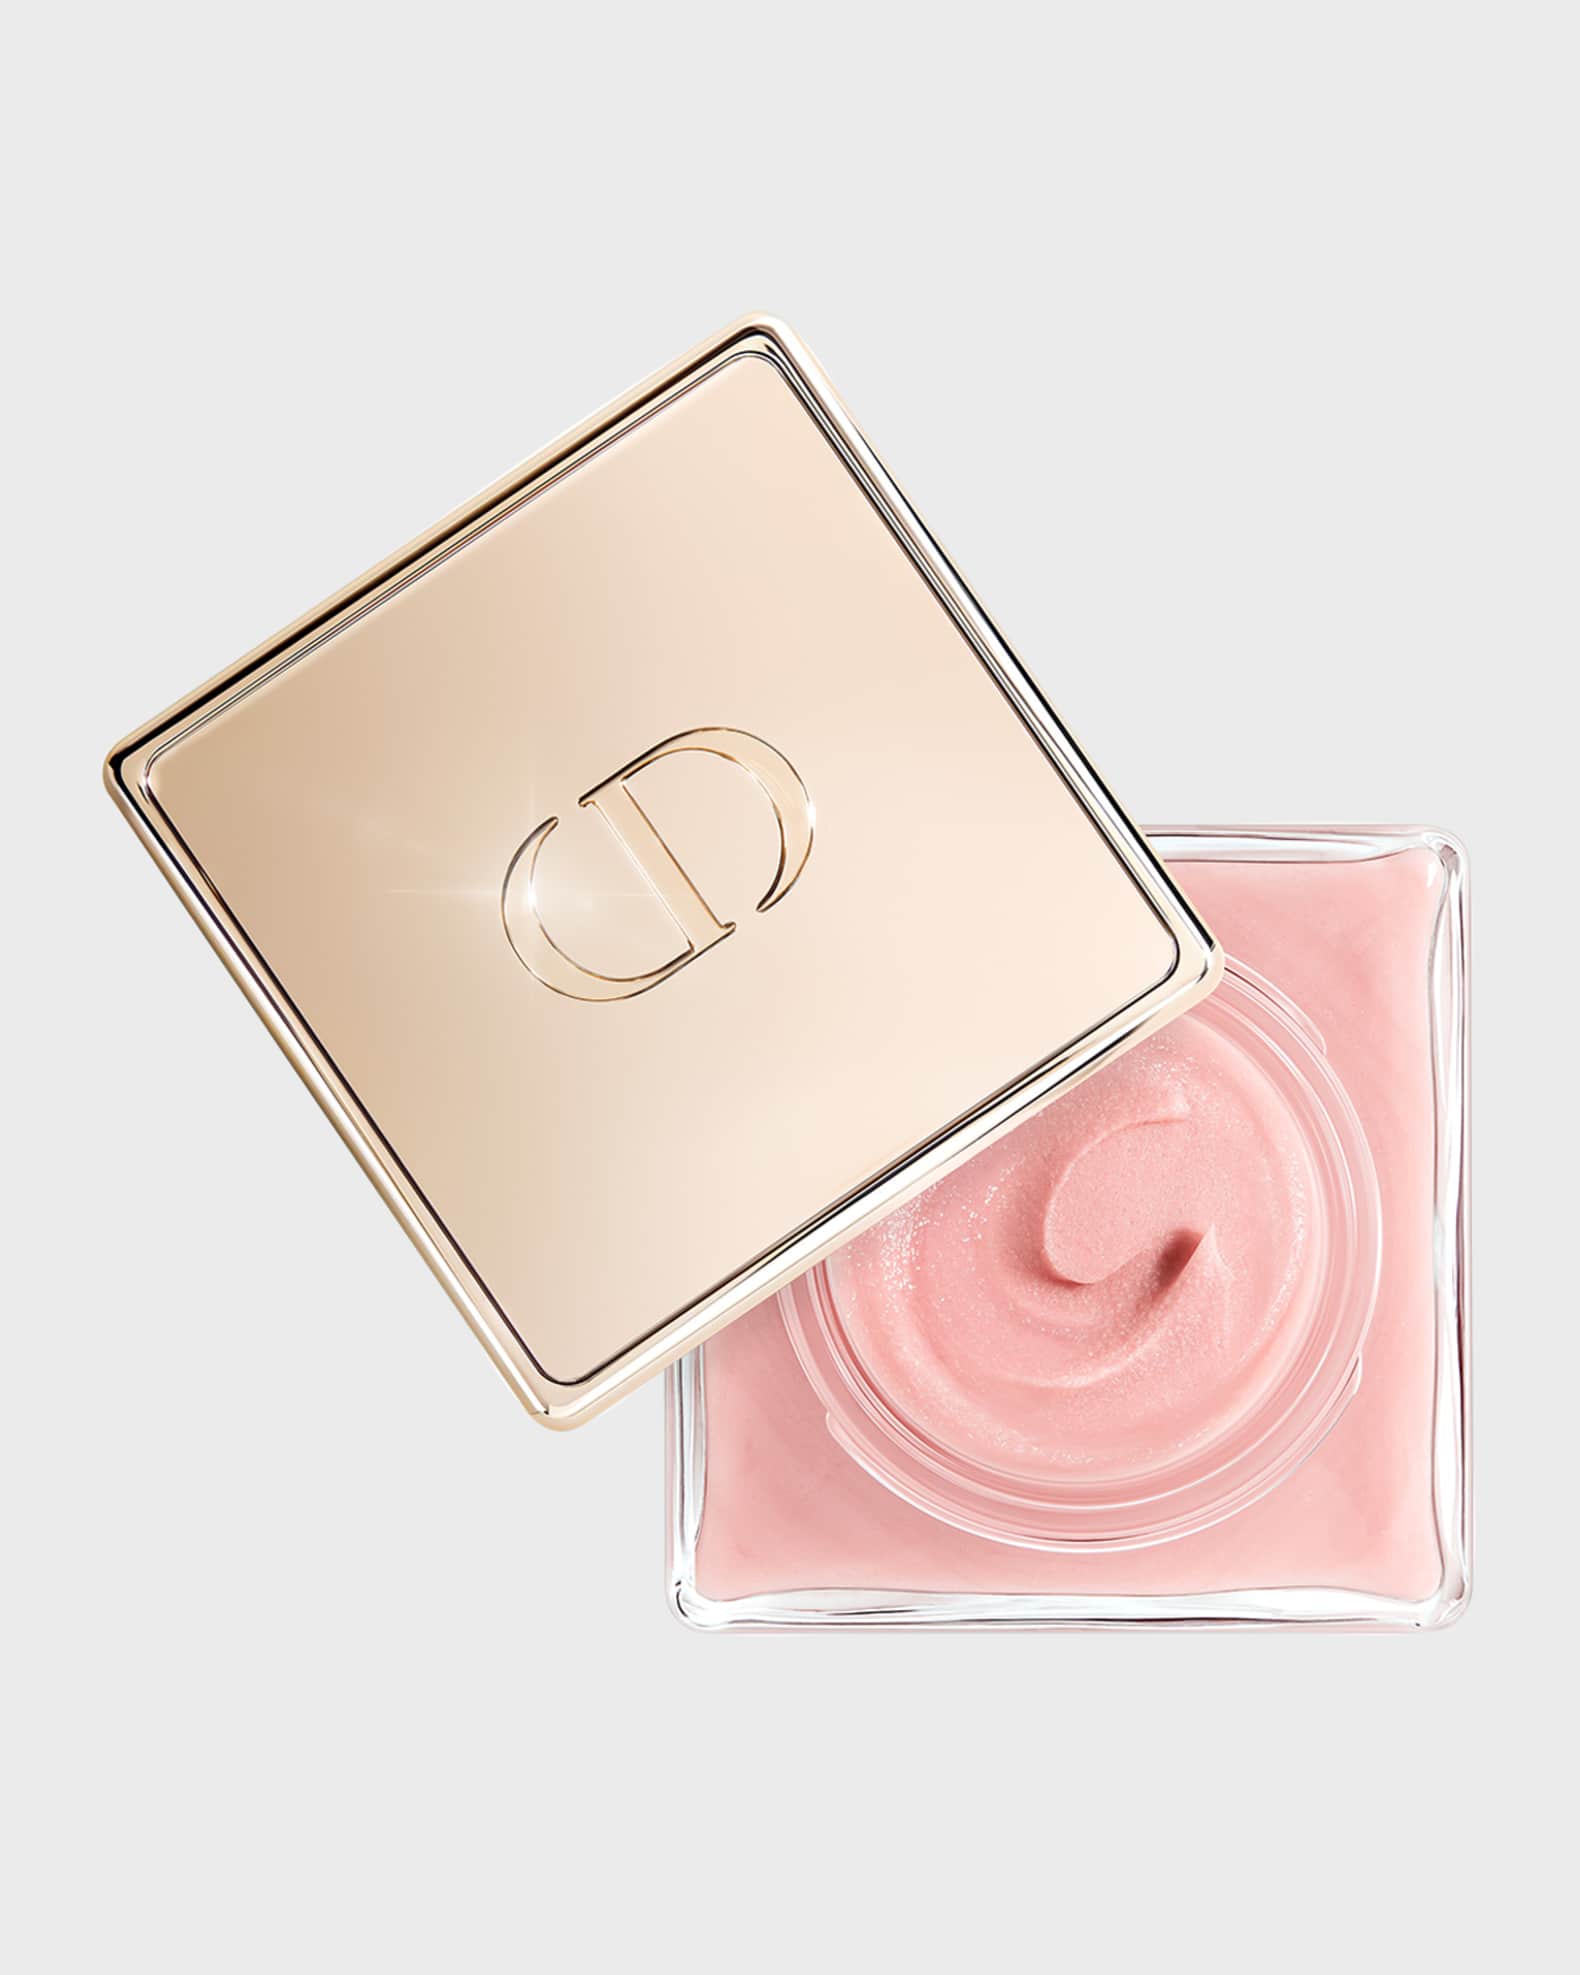 Dior Prestige Le Sucre de Gommage - Rose Sugar Scrub, 1 oz